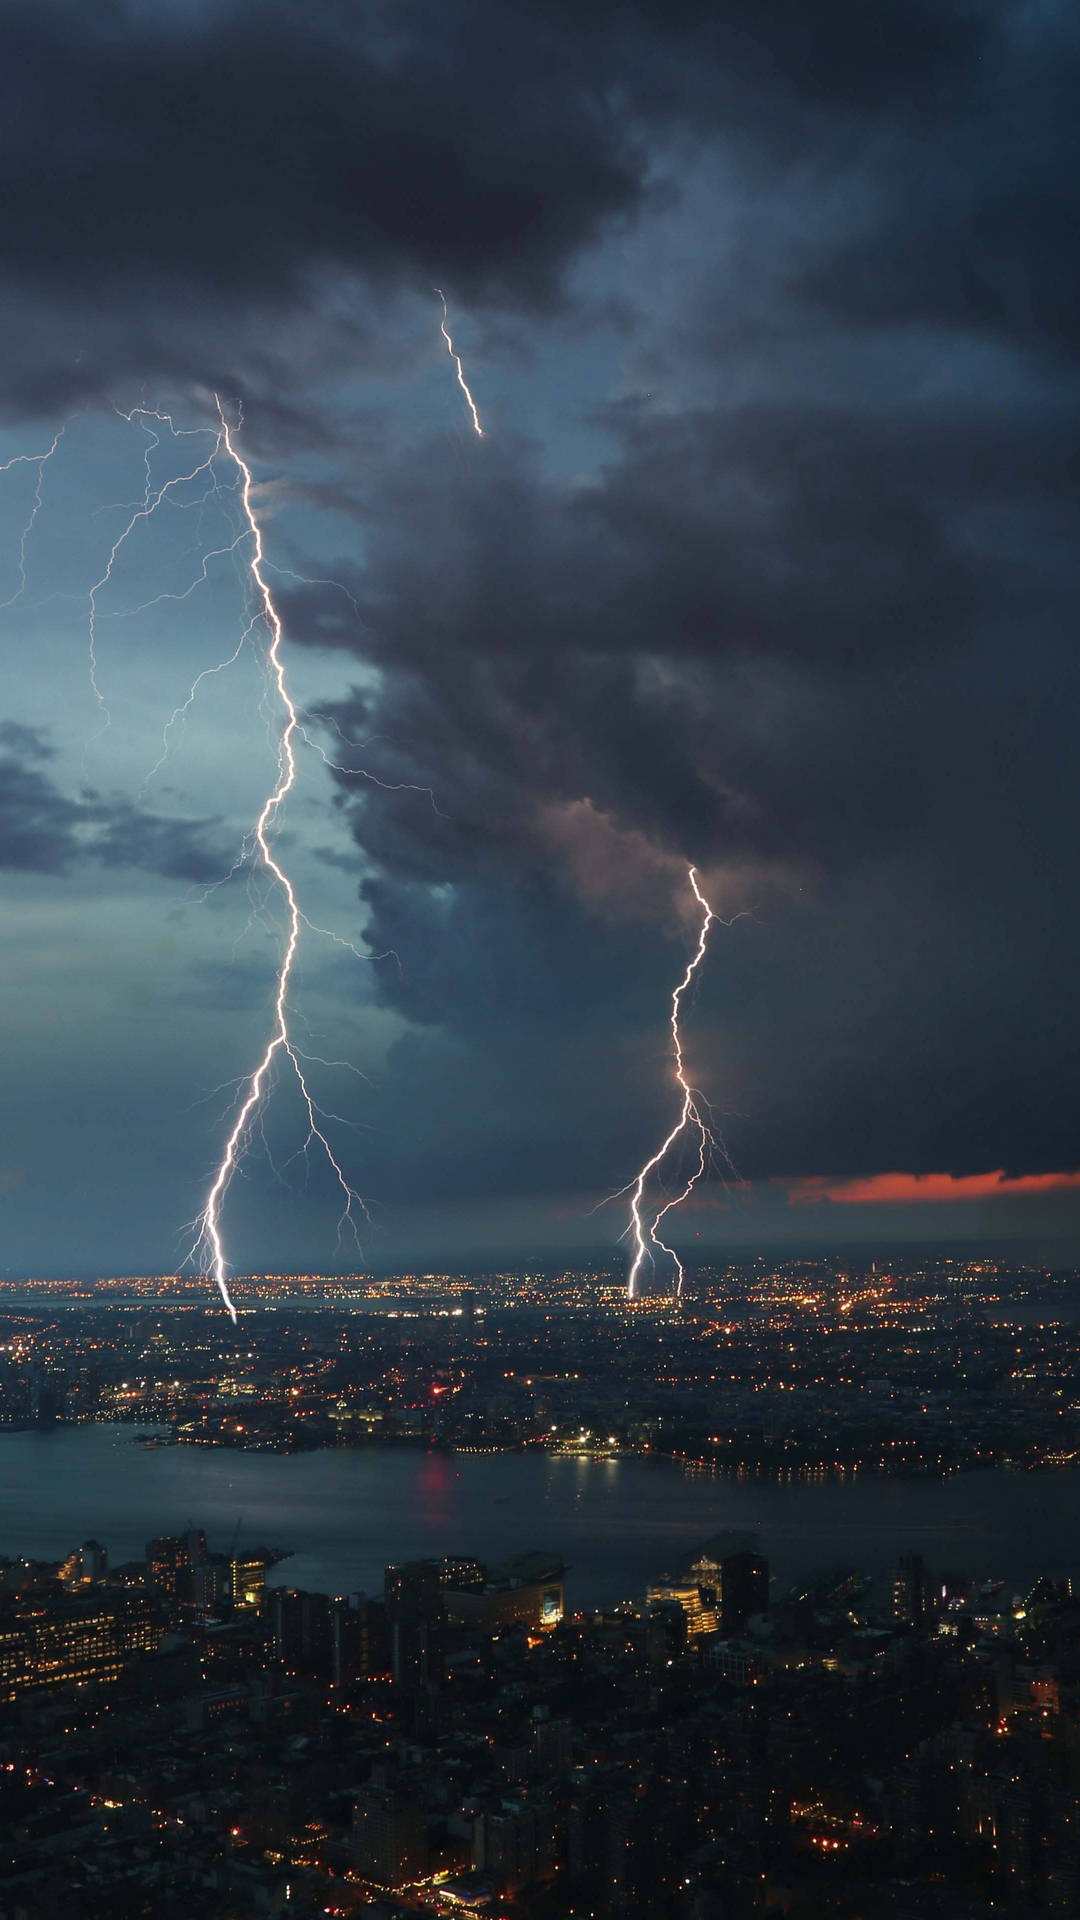 lightning strikes over a city at night Wallpaper